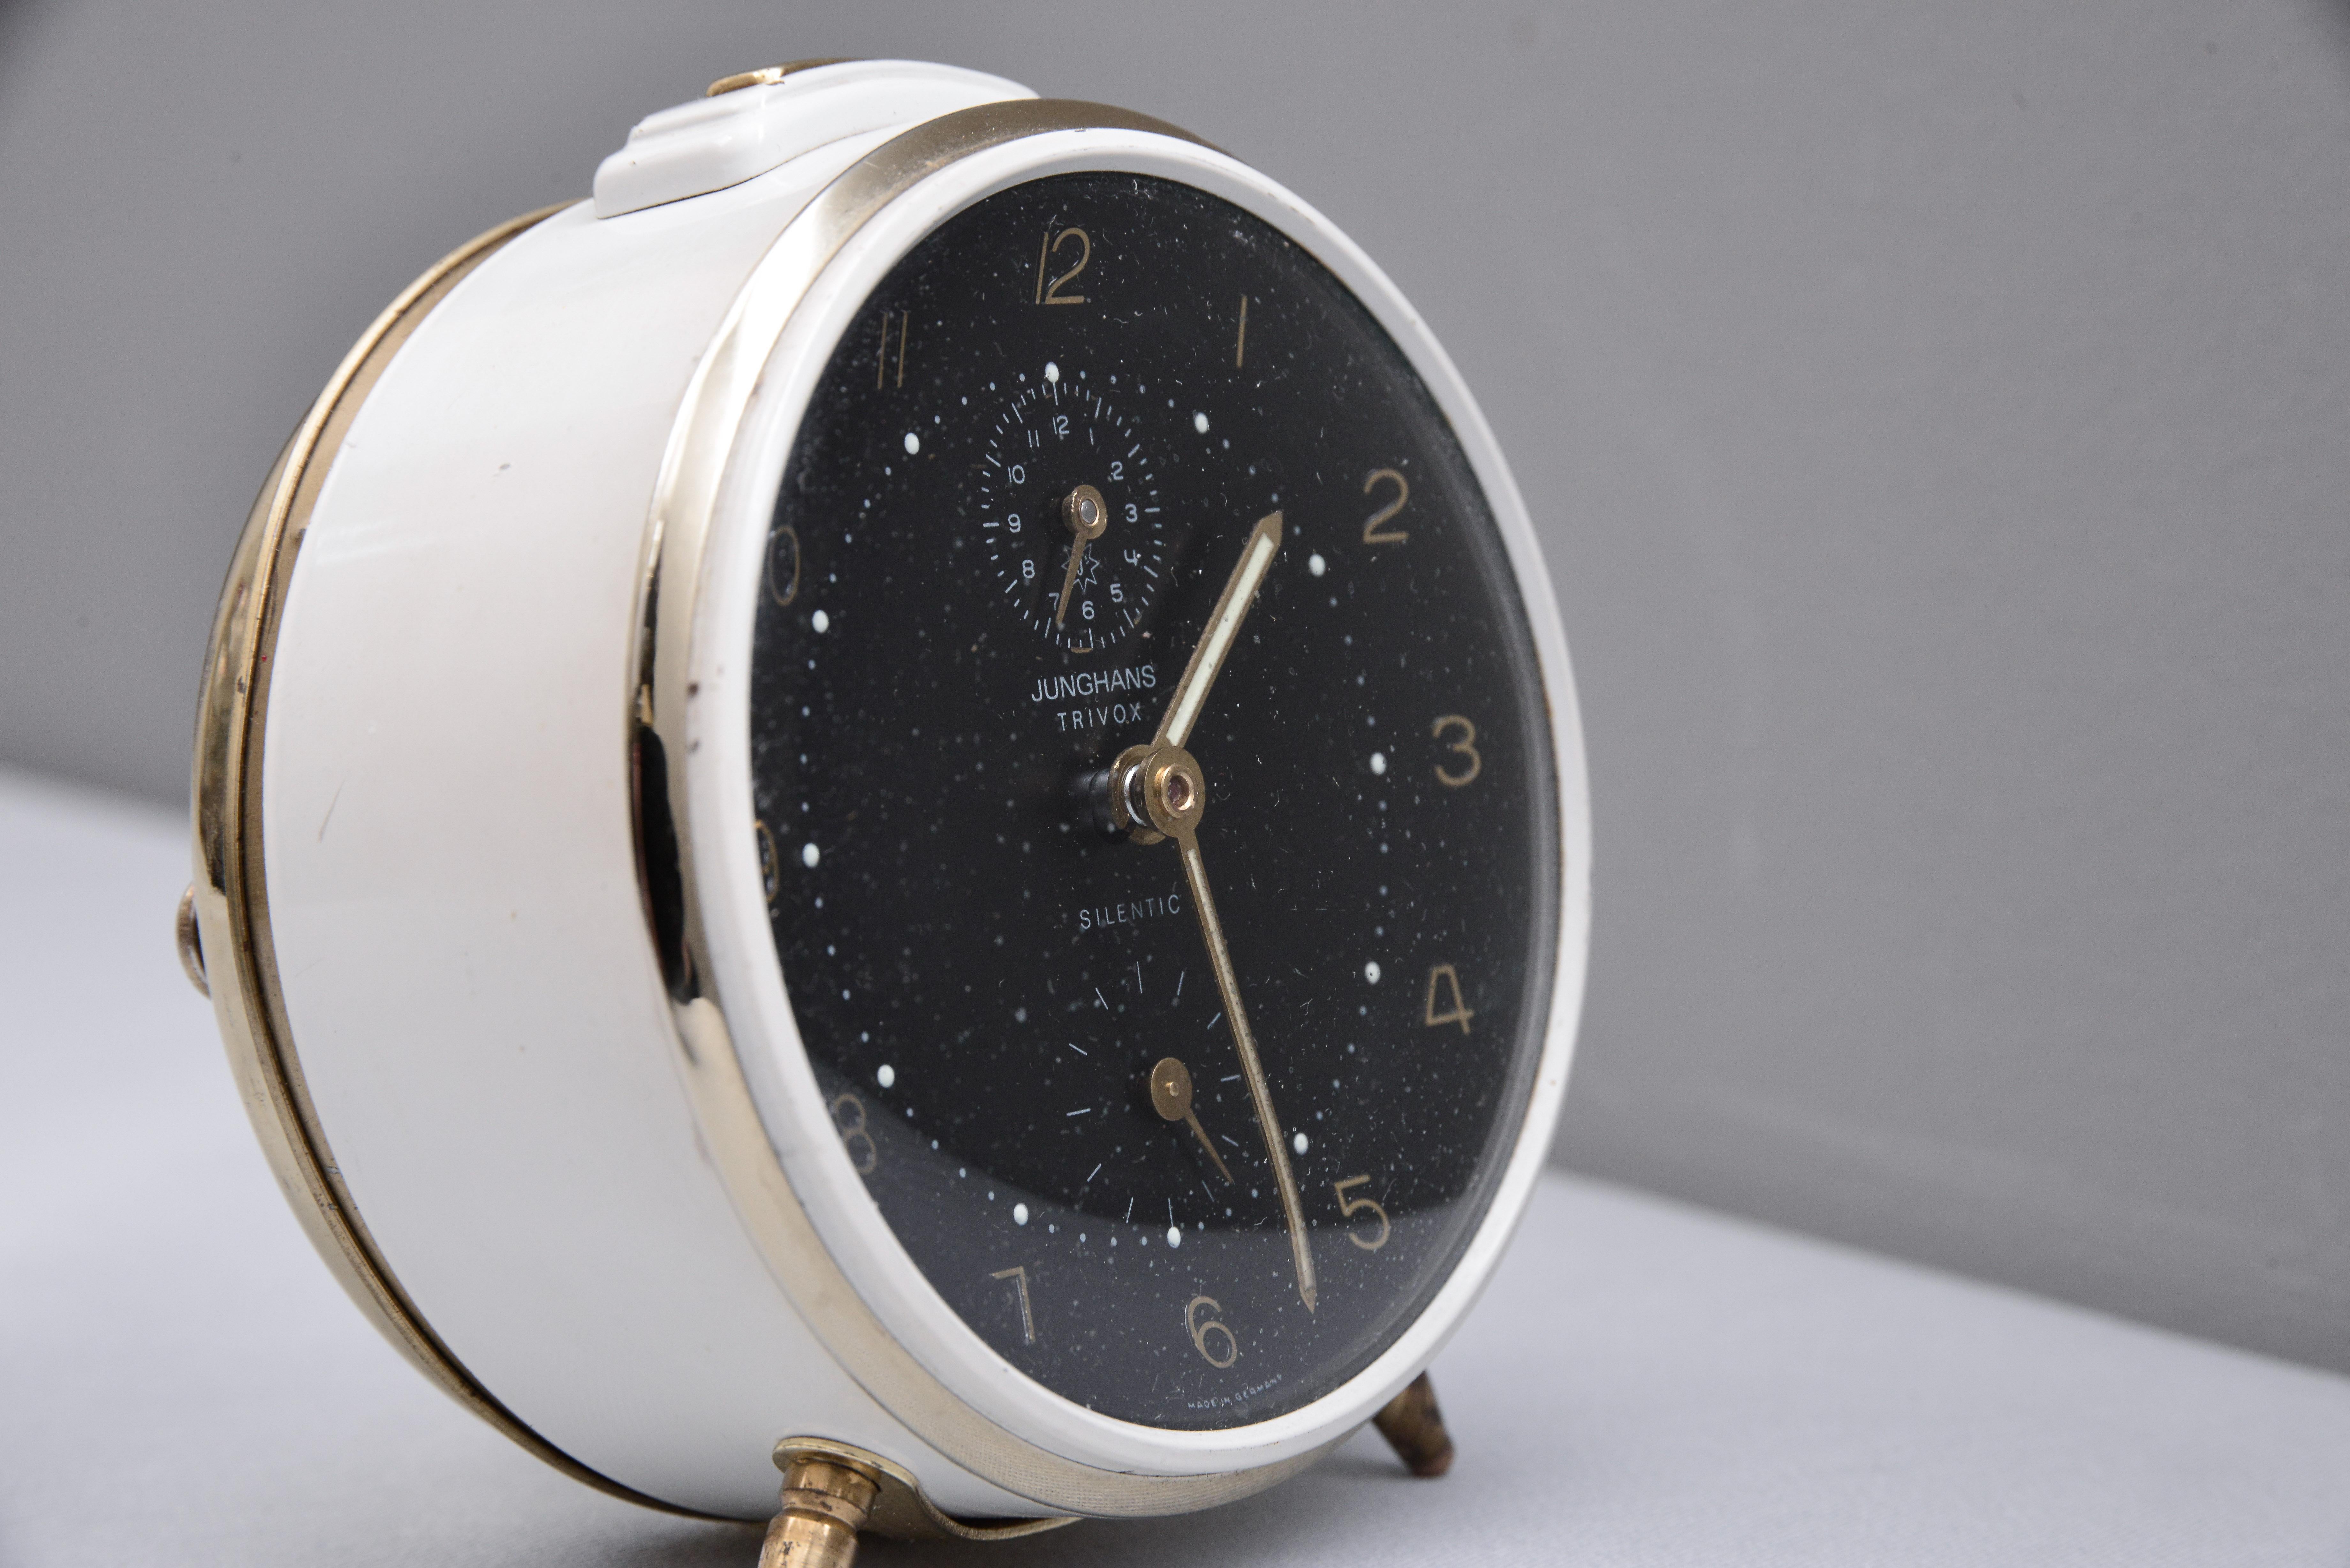 Vintage Junghans table alarm clock, circa 1960s
Original condition.